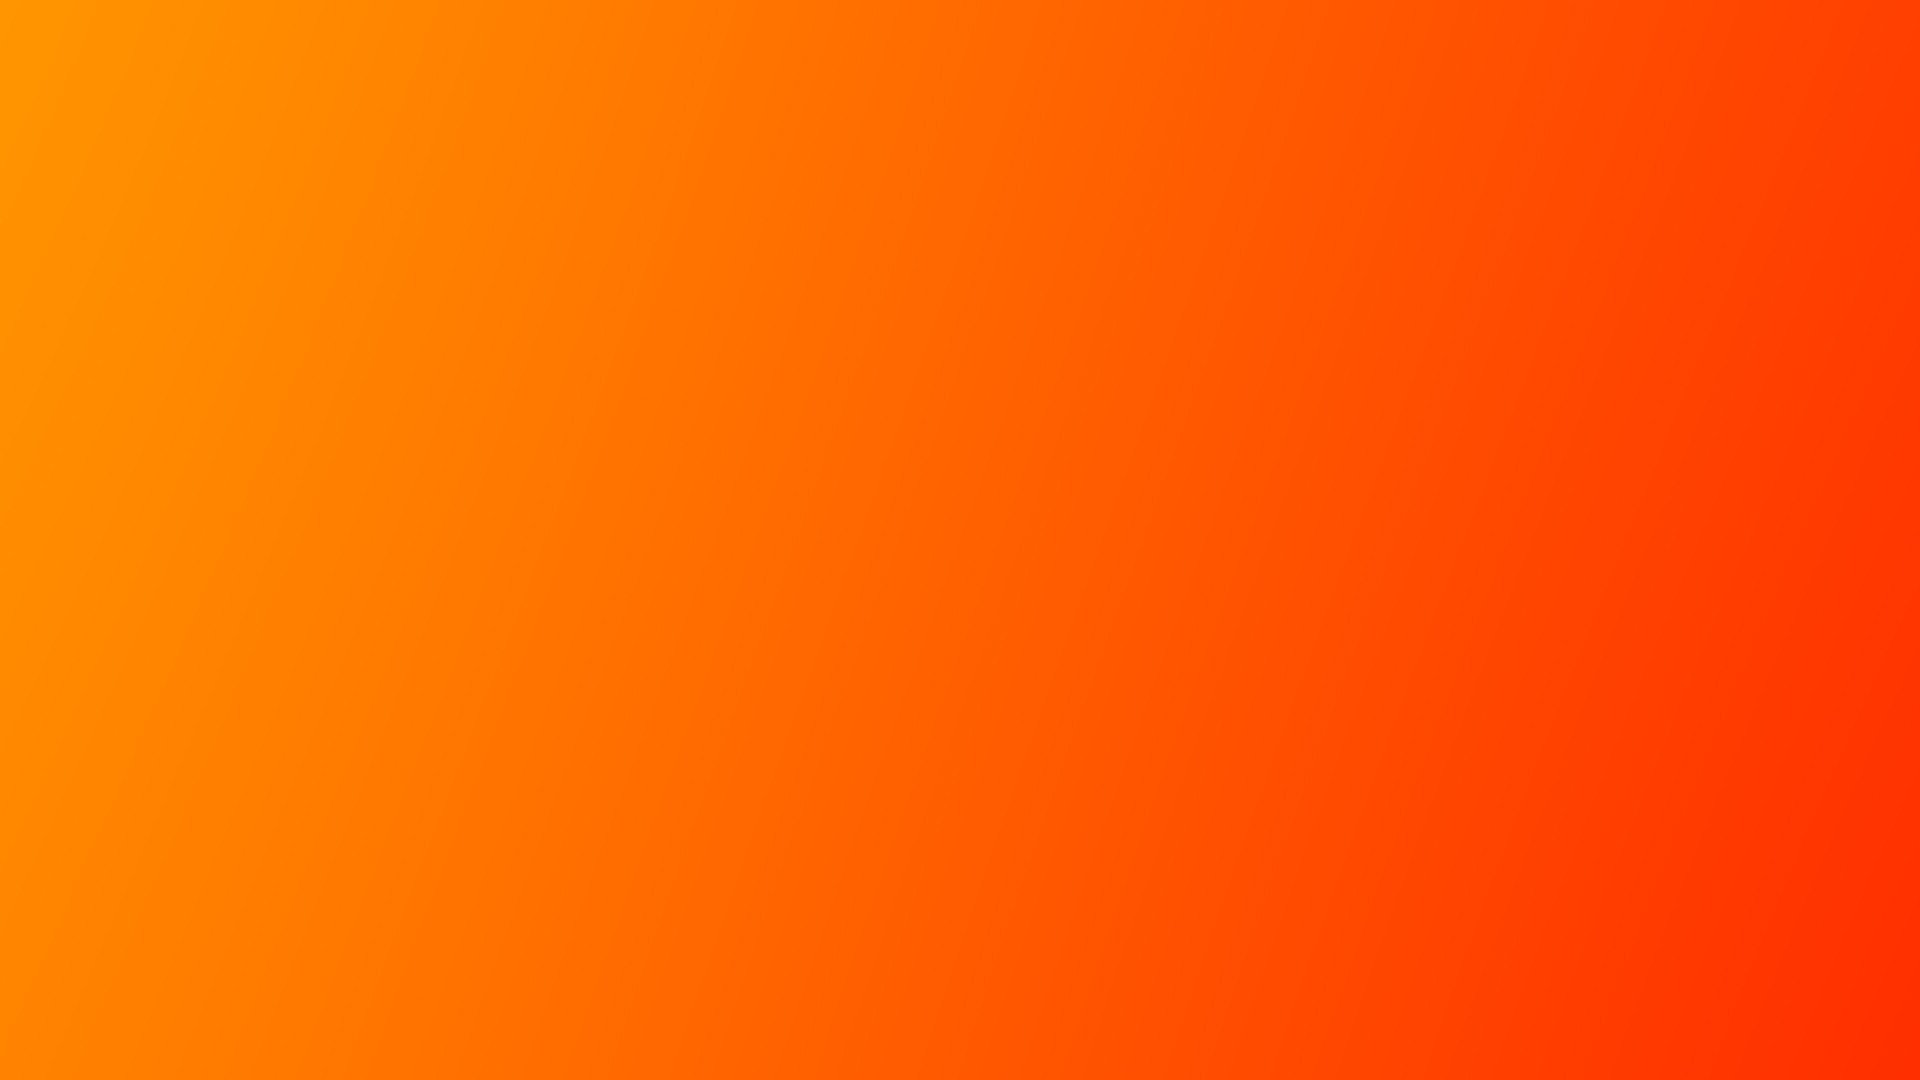 Orange Gradient HD Wallpapers là một bộ sưu tập hình nền tuyệt đẹp mang đến cho bạn sự pha trộn hoàn hảo giữa màu cam và màu vàng. Hình ảnh nền gradient mang đến cảm giác trẻ trung và đầy lôi cuốn, tạo nên sự khác biệt độc đáo cho máy tính của bạn.